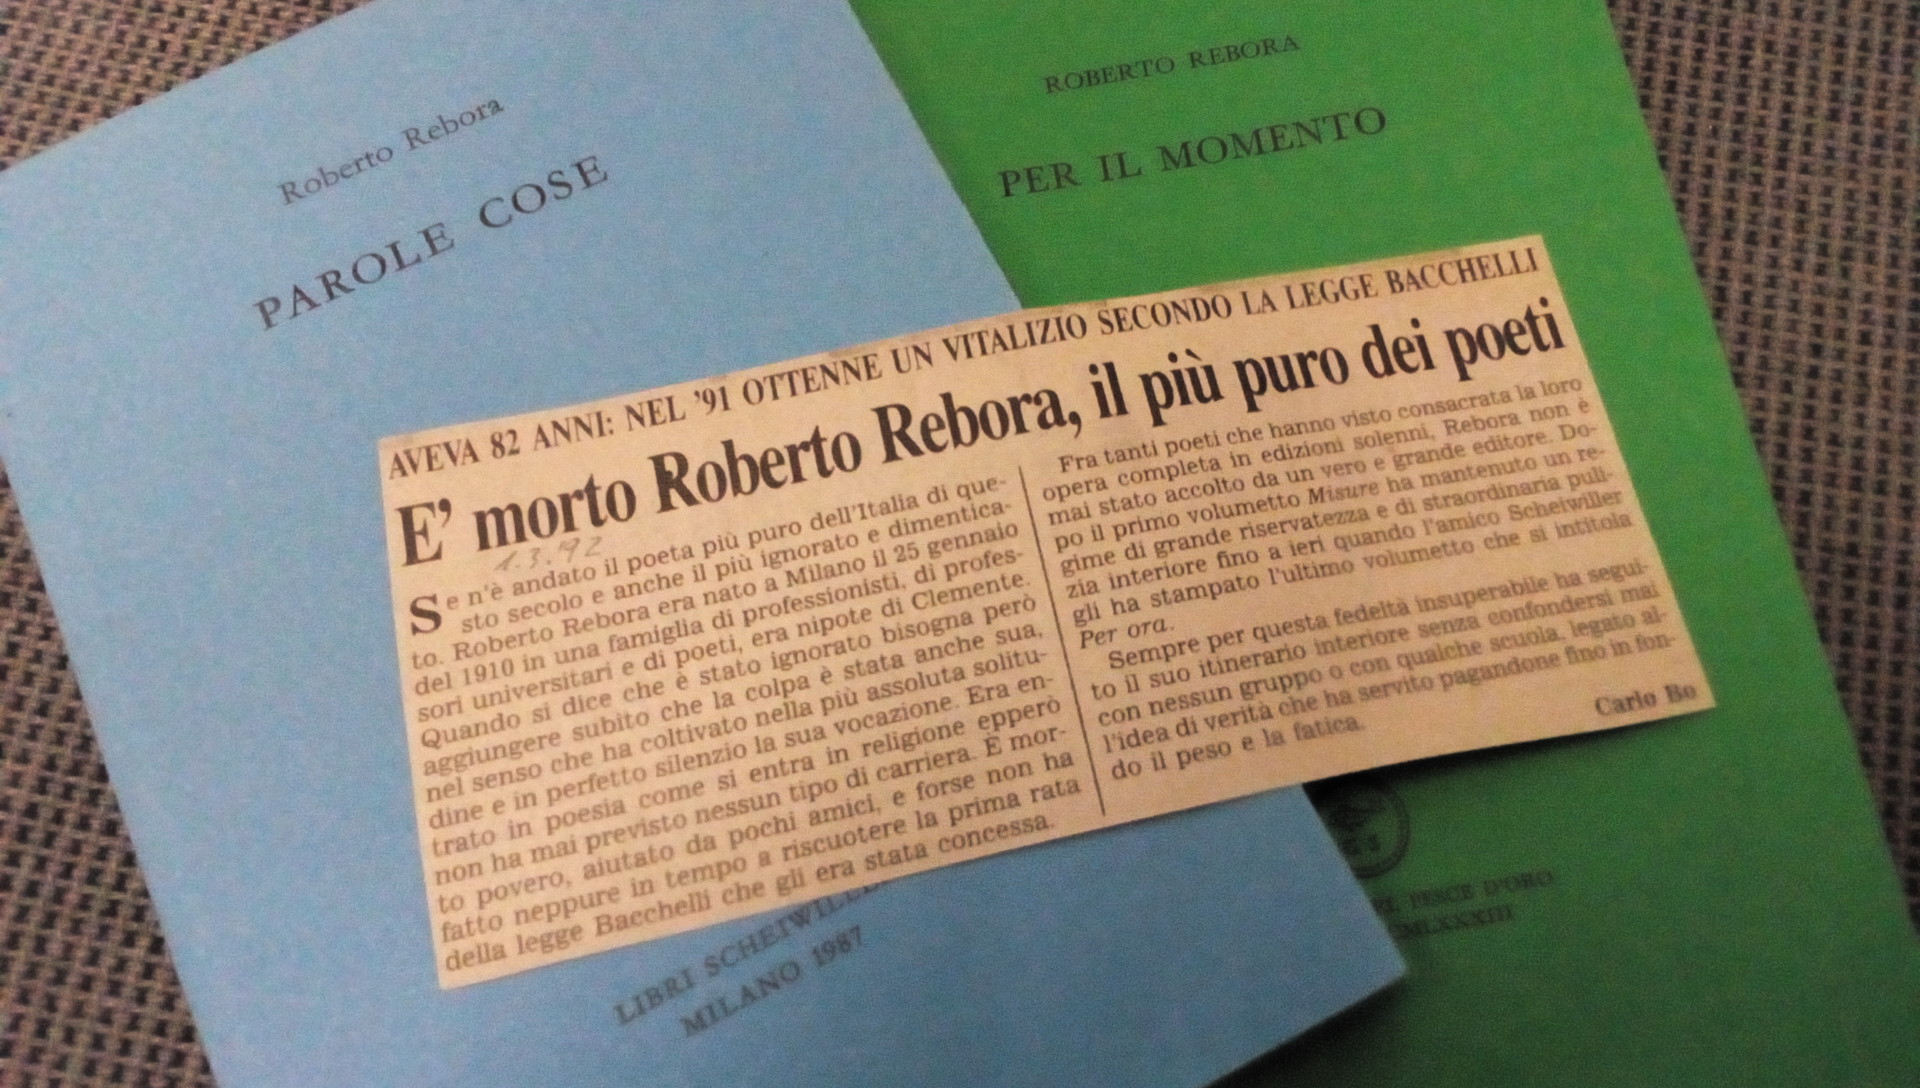 29 febbraio, muore Roberto Rebora, “il più puro dei poeti”. Scrisse Carlo Bo: “fu legato all’idea di verità che ha servito pagandone fino in fondo il peso e la fatica”. Ricordarlo è un privilegio